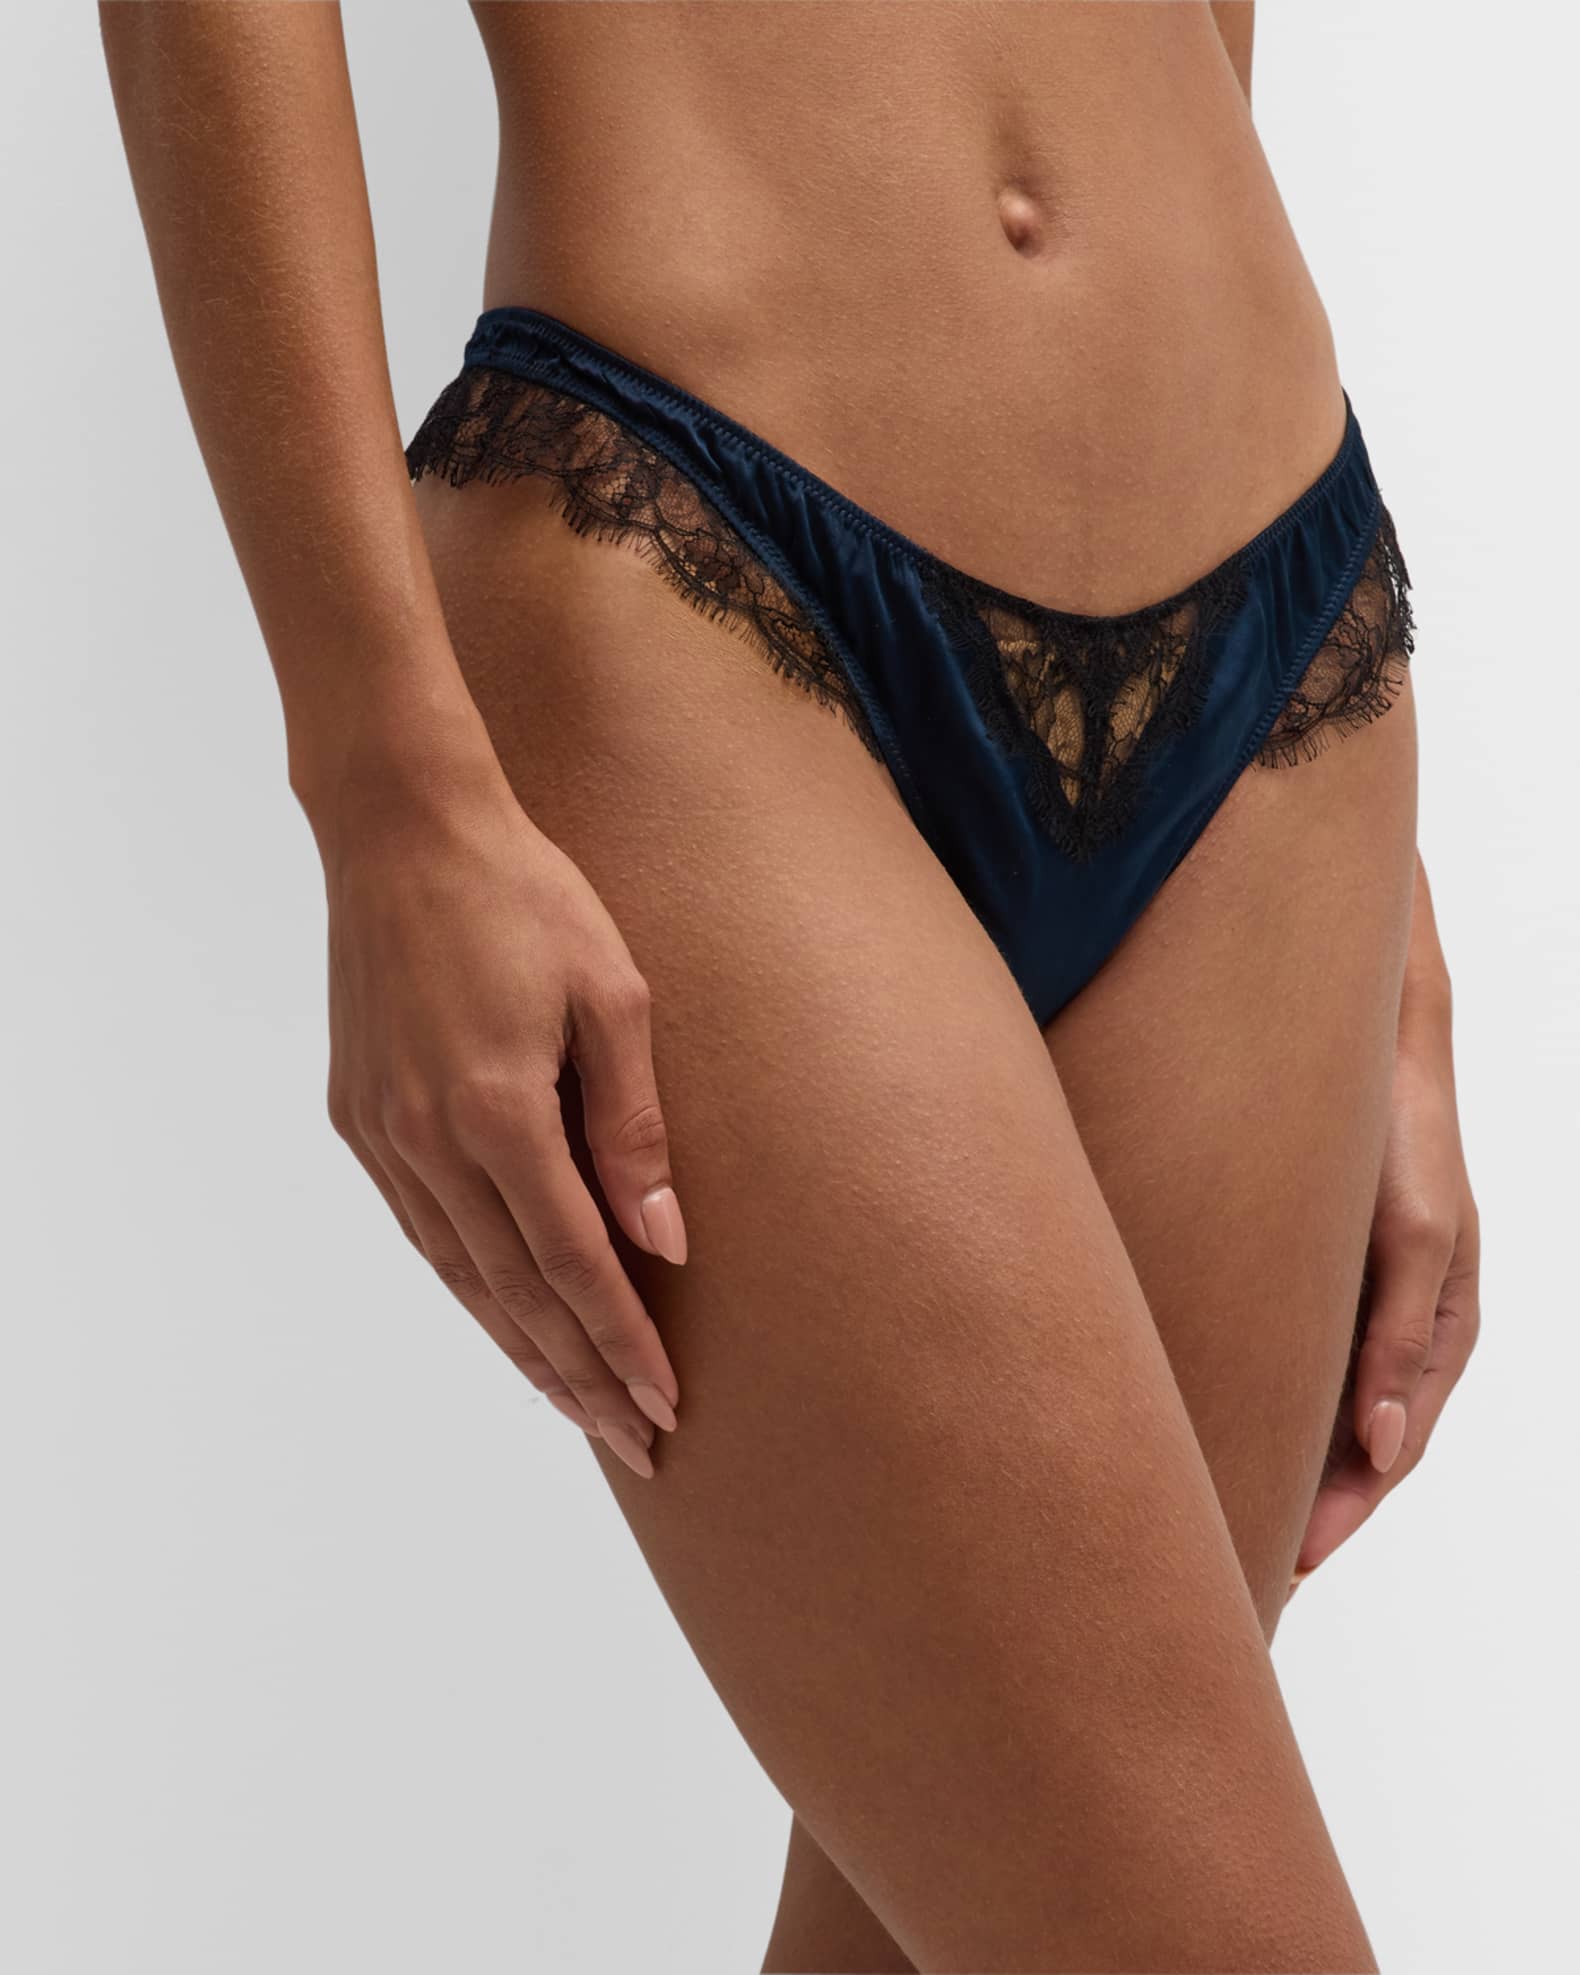 Louis Vuitton Designer Spandex Women Underwear/boy Shorts 